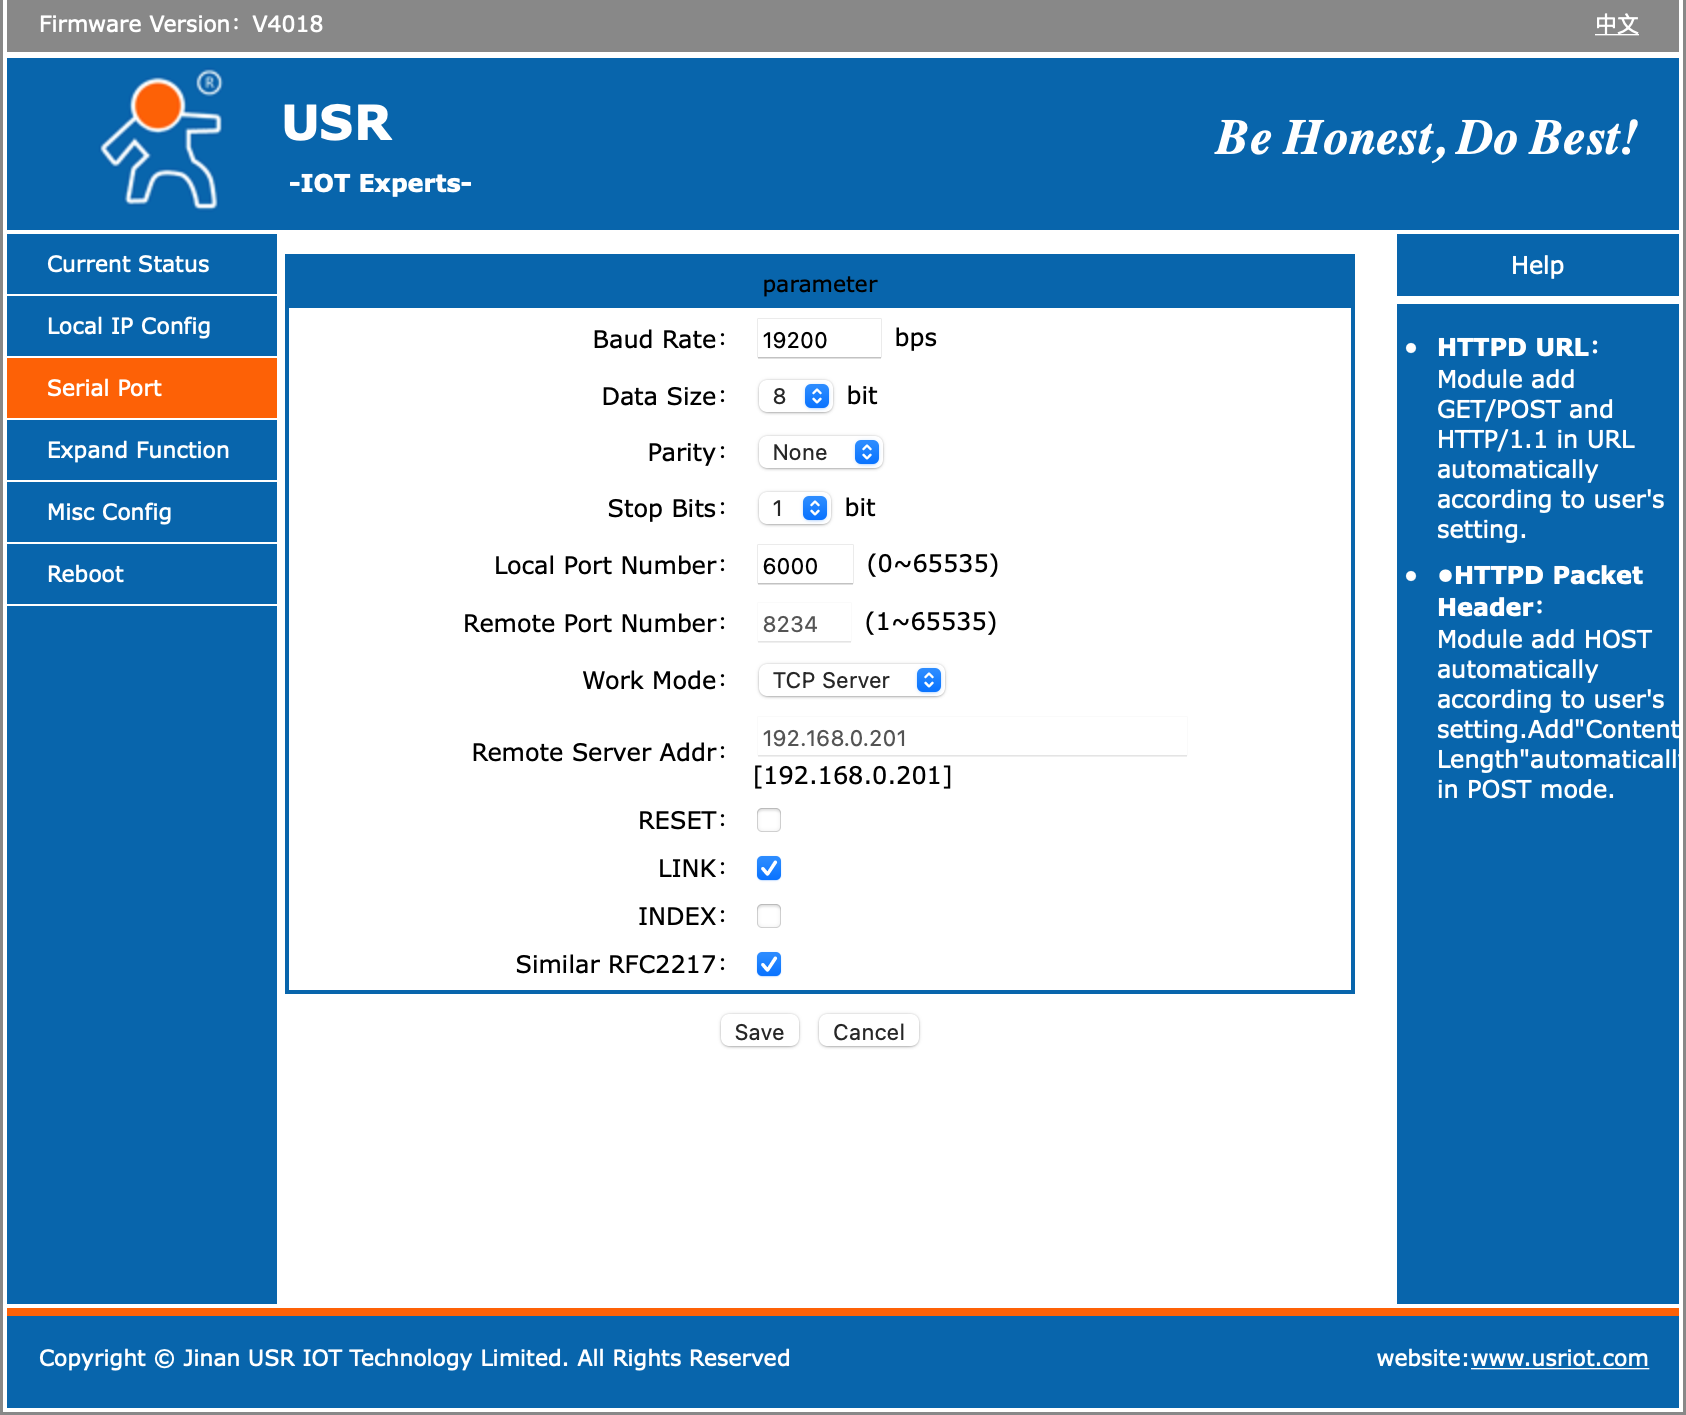 USR Homepage.png